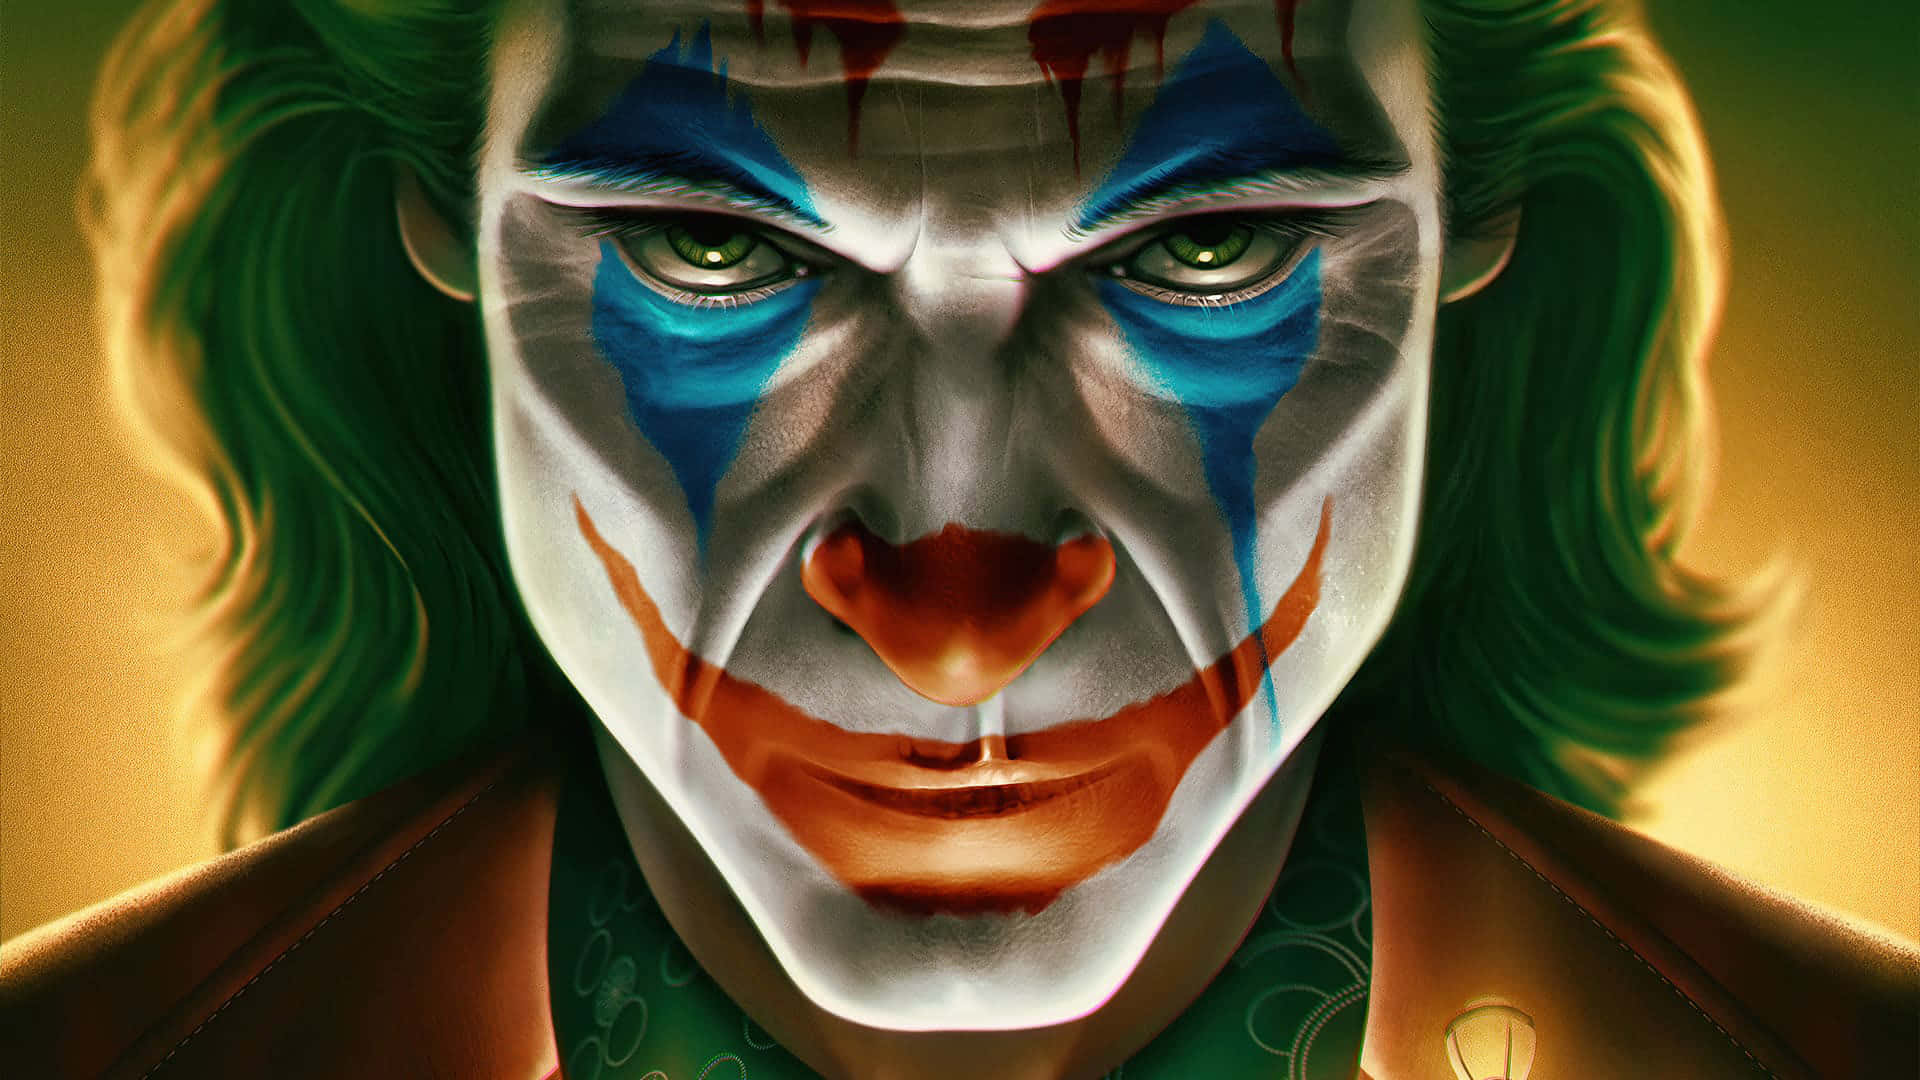 Jokermaskallvarligt Utseende Bild.